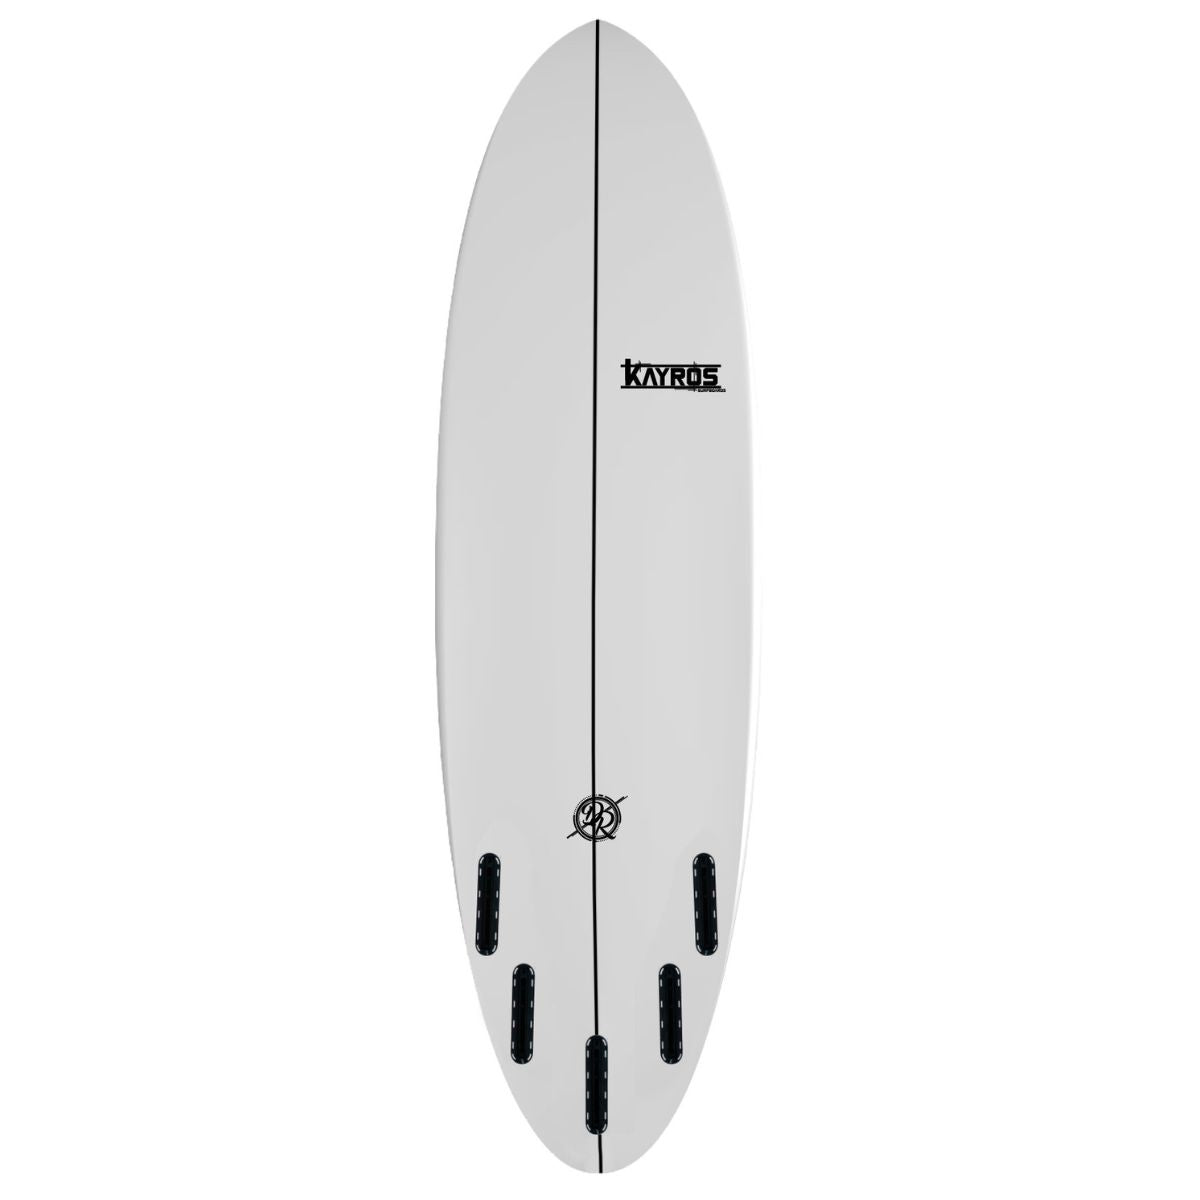 Wivo | Kayros Surfboards